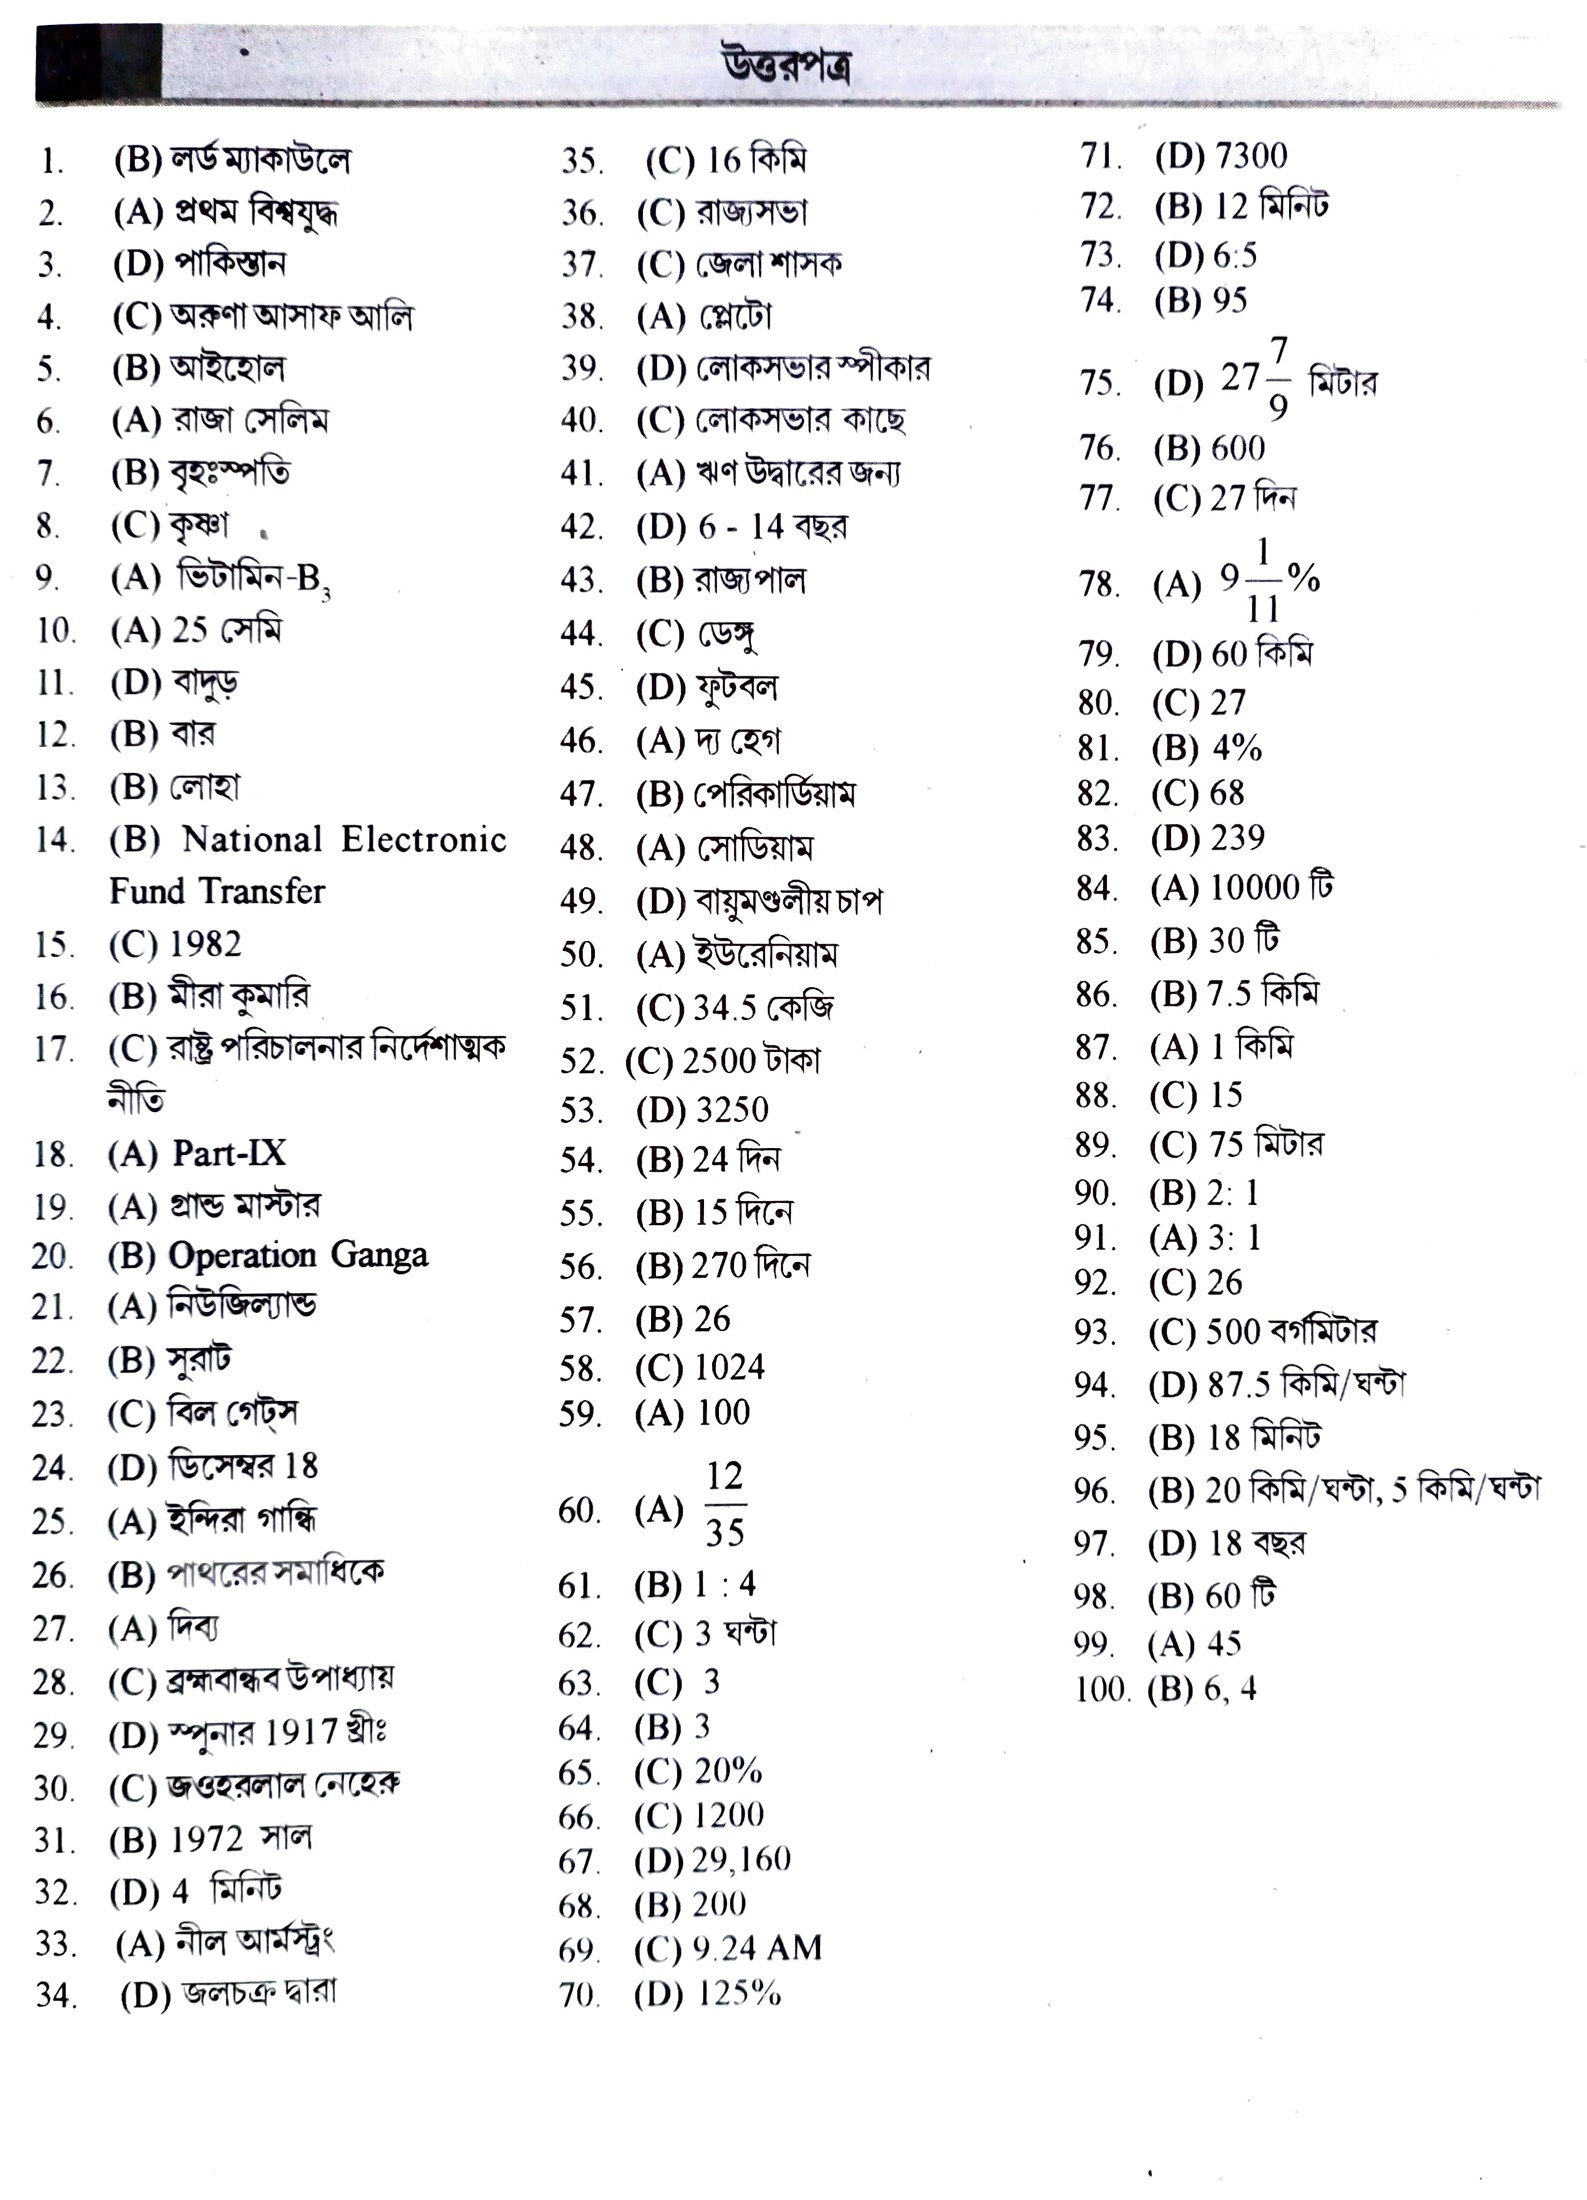 ফুড সাব ইন্সপেক্টর ৫০ টি জেনারেল স্টাডিজ ও ৫০ টি অ্যারিথমেটিক প্রাকটিস সেট পিডিএফ ||Food SI General Studies and Arithmetic Practice Set Pdf in Bengali